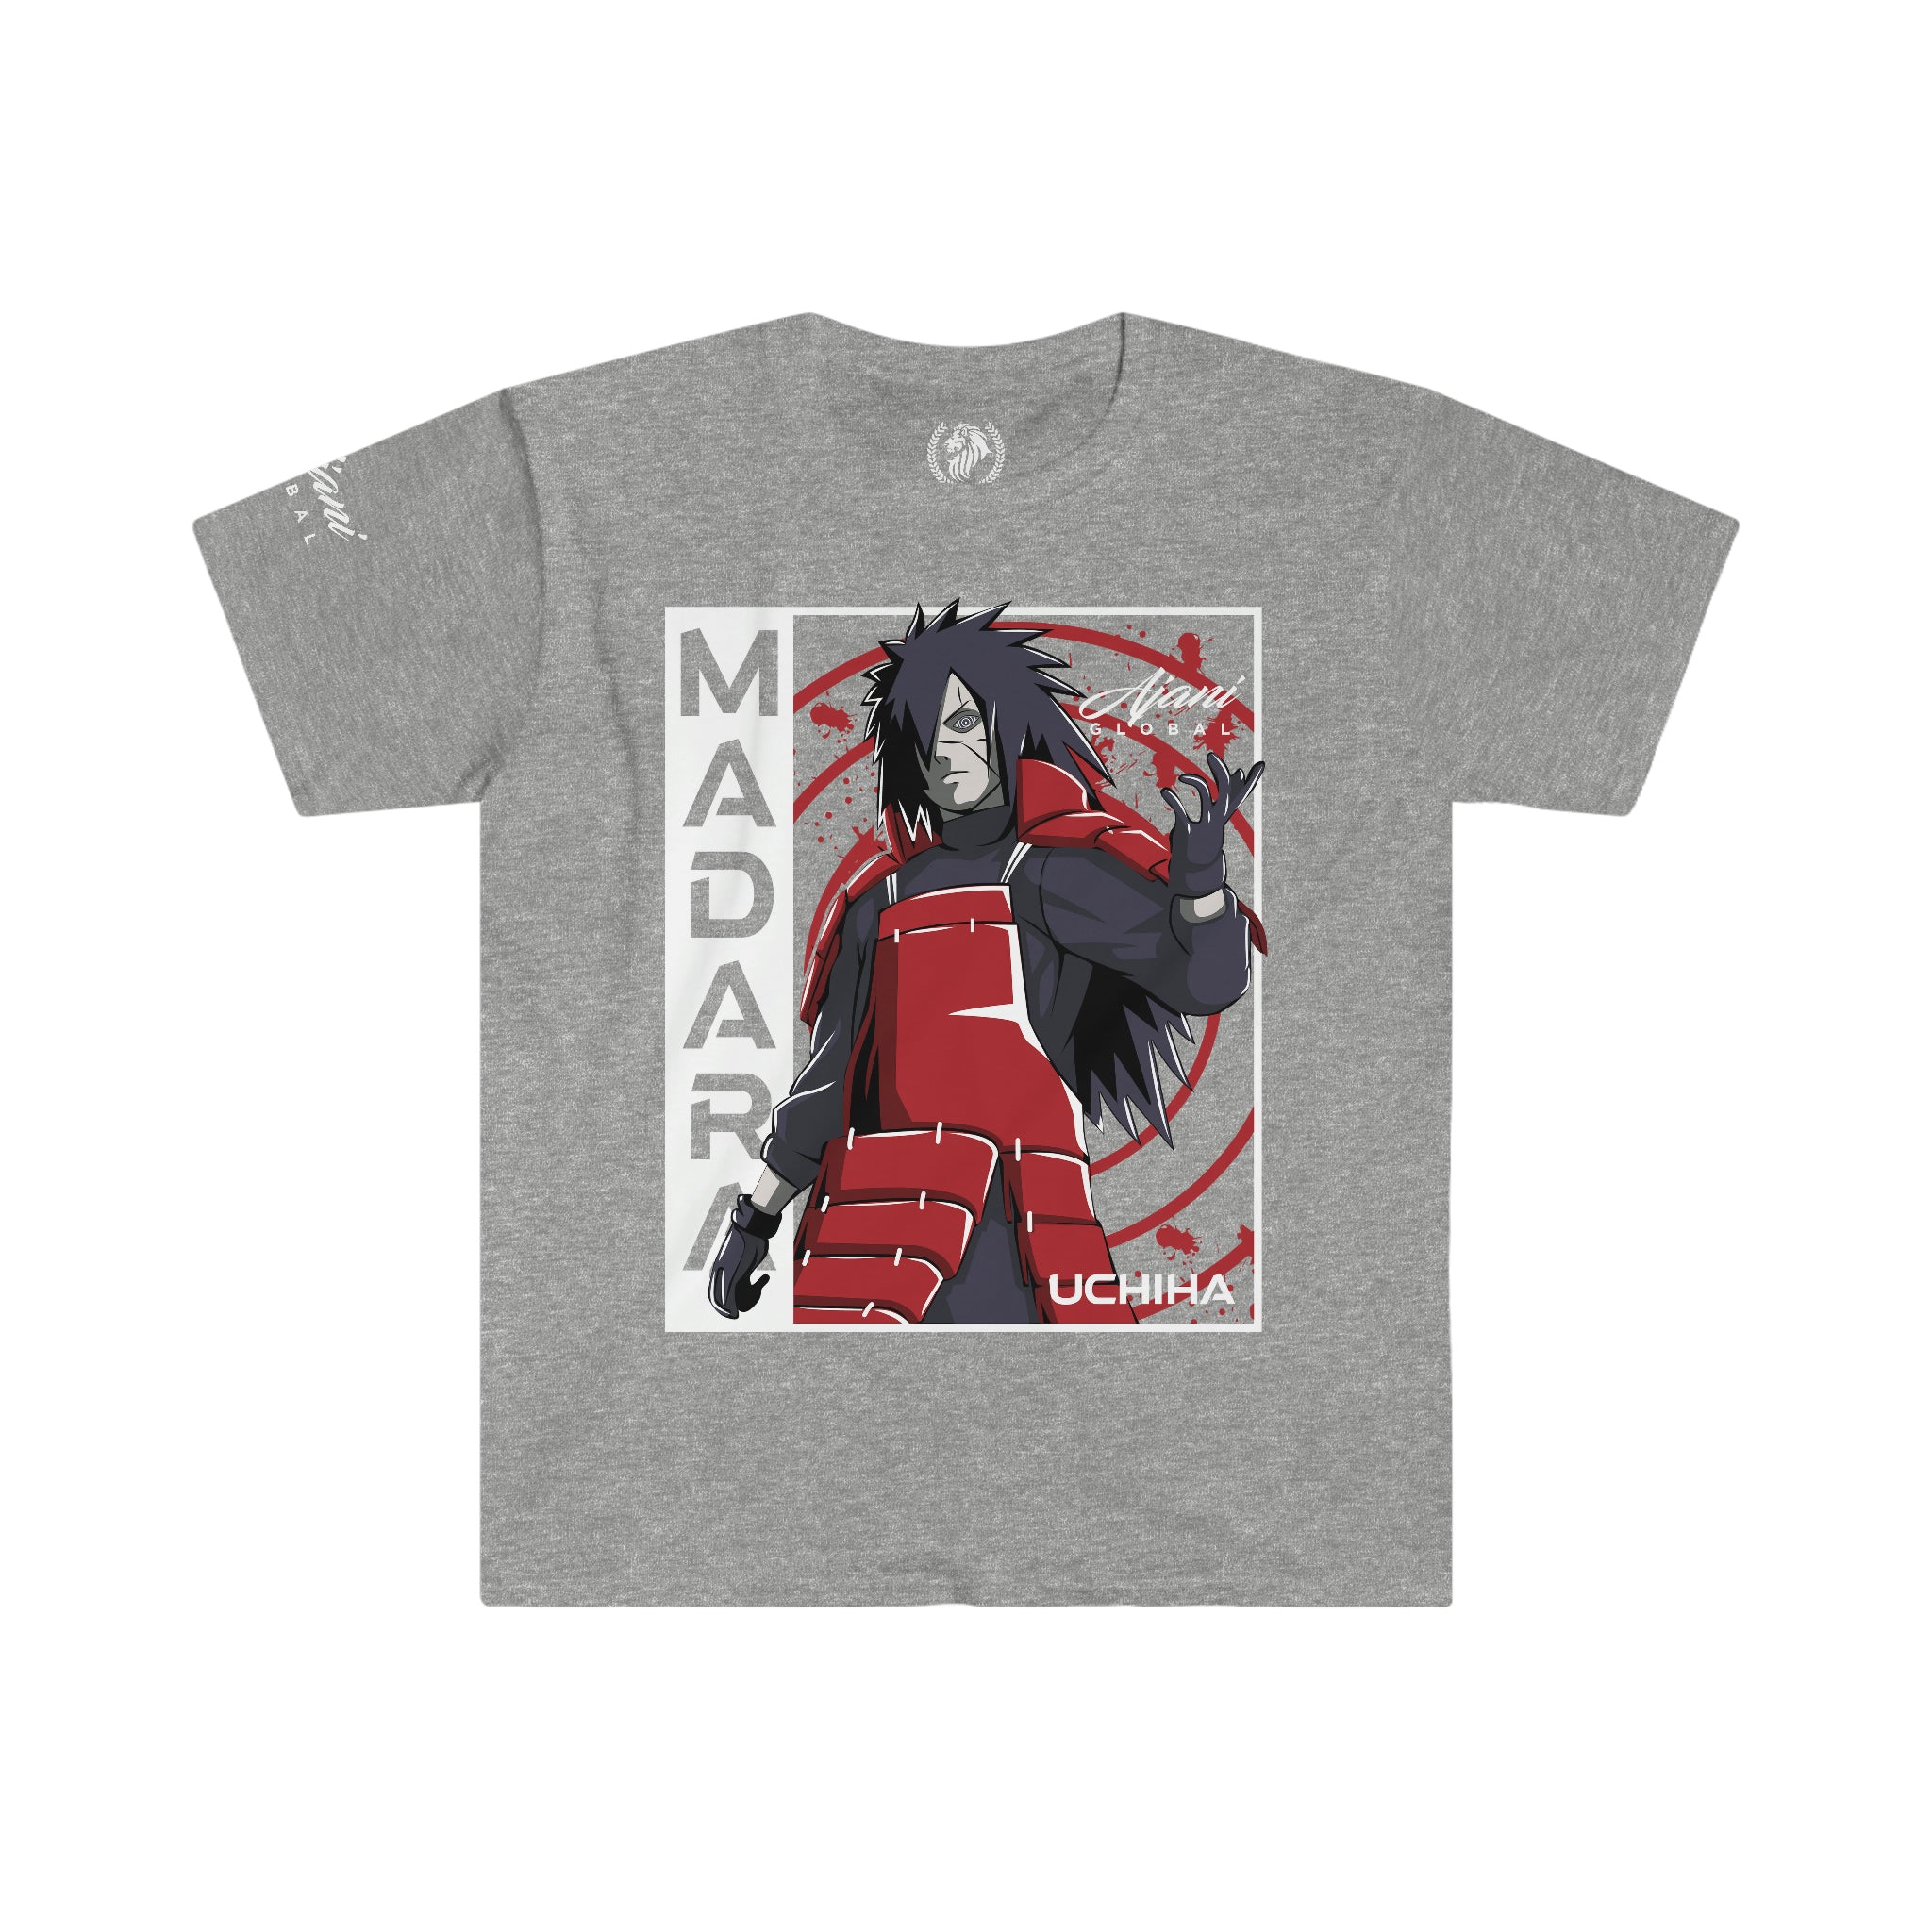 Madara Uchiha Unisex T-Shirt